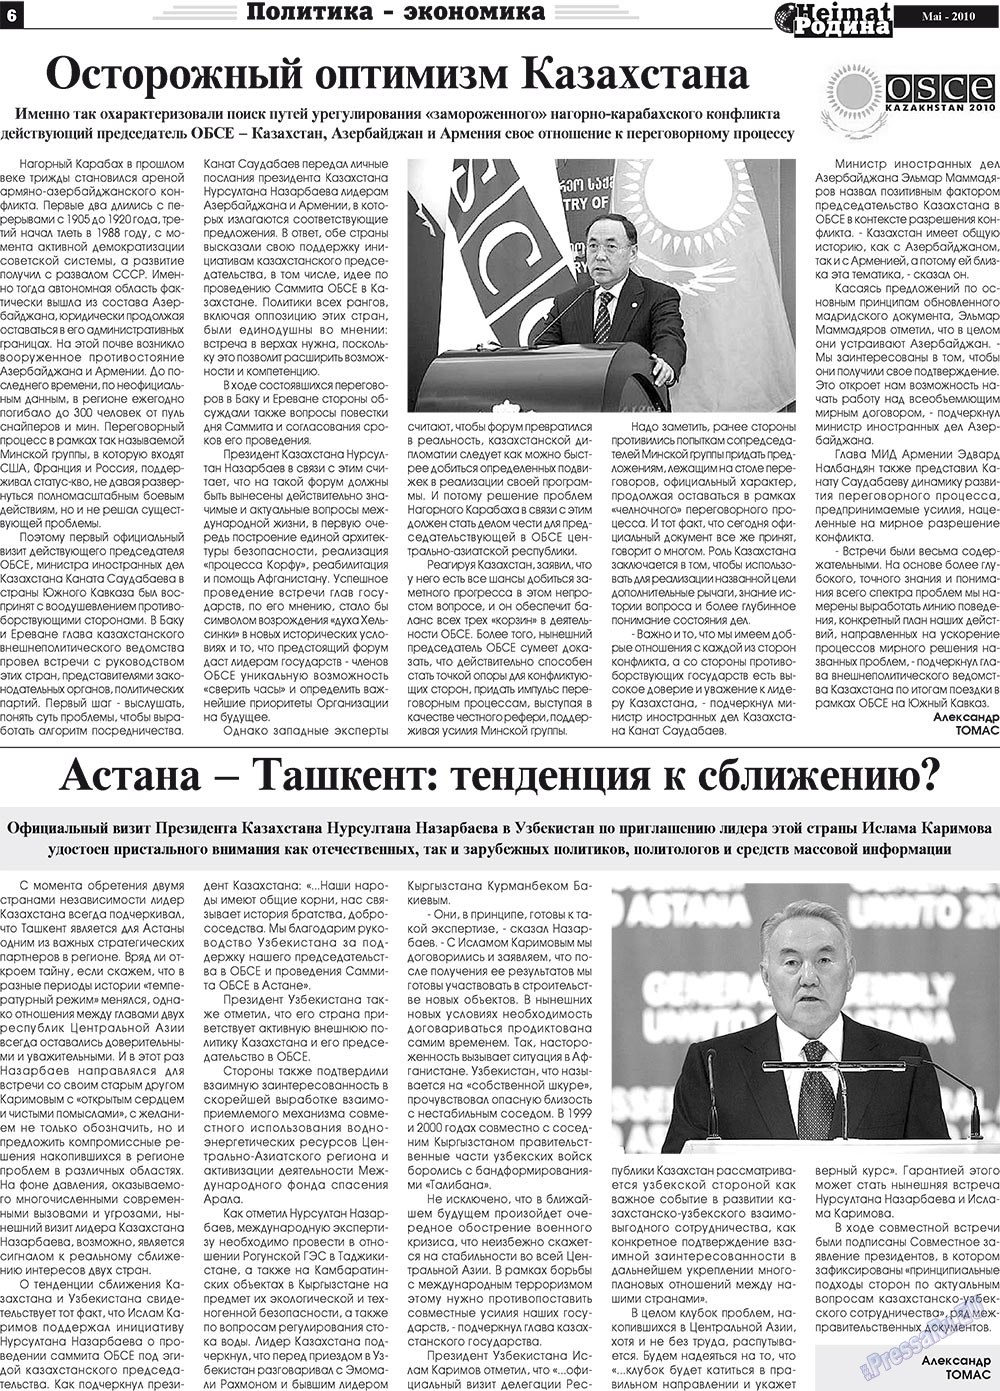 Heimat-Родина (газета). 2010 год, номер 5, стр. 6